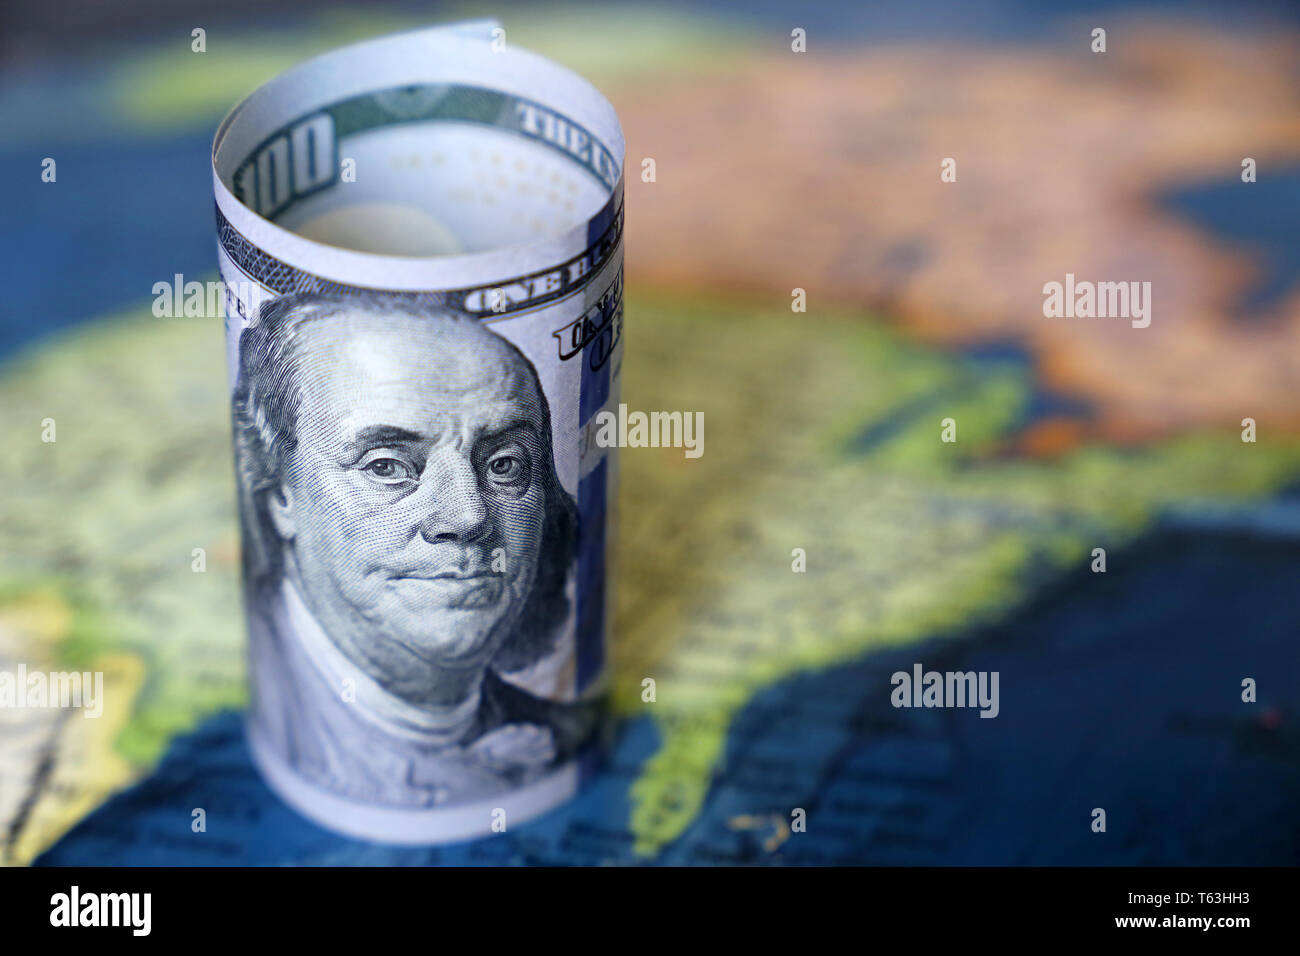 Le fatture del dollaro sulla mappa degli STATI UNITI D'AMERICA. Concetto di americani economia e finanza, del mercato azionario la politica statunitense Foto Stock